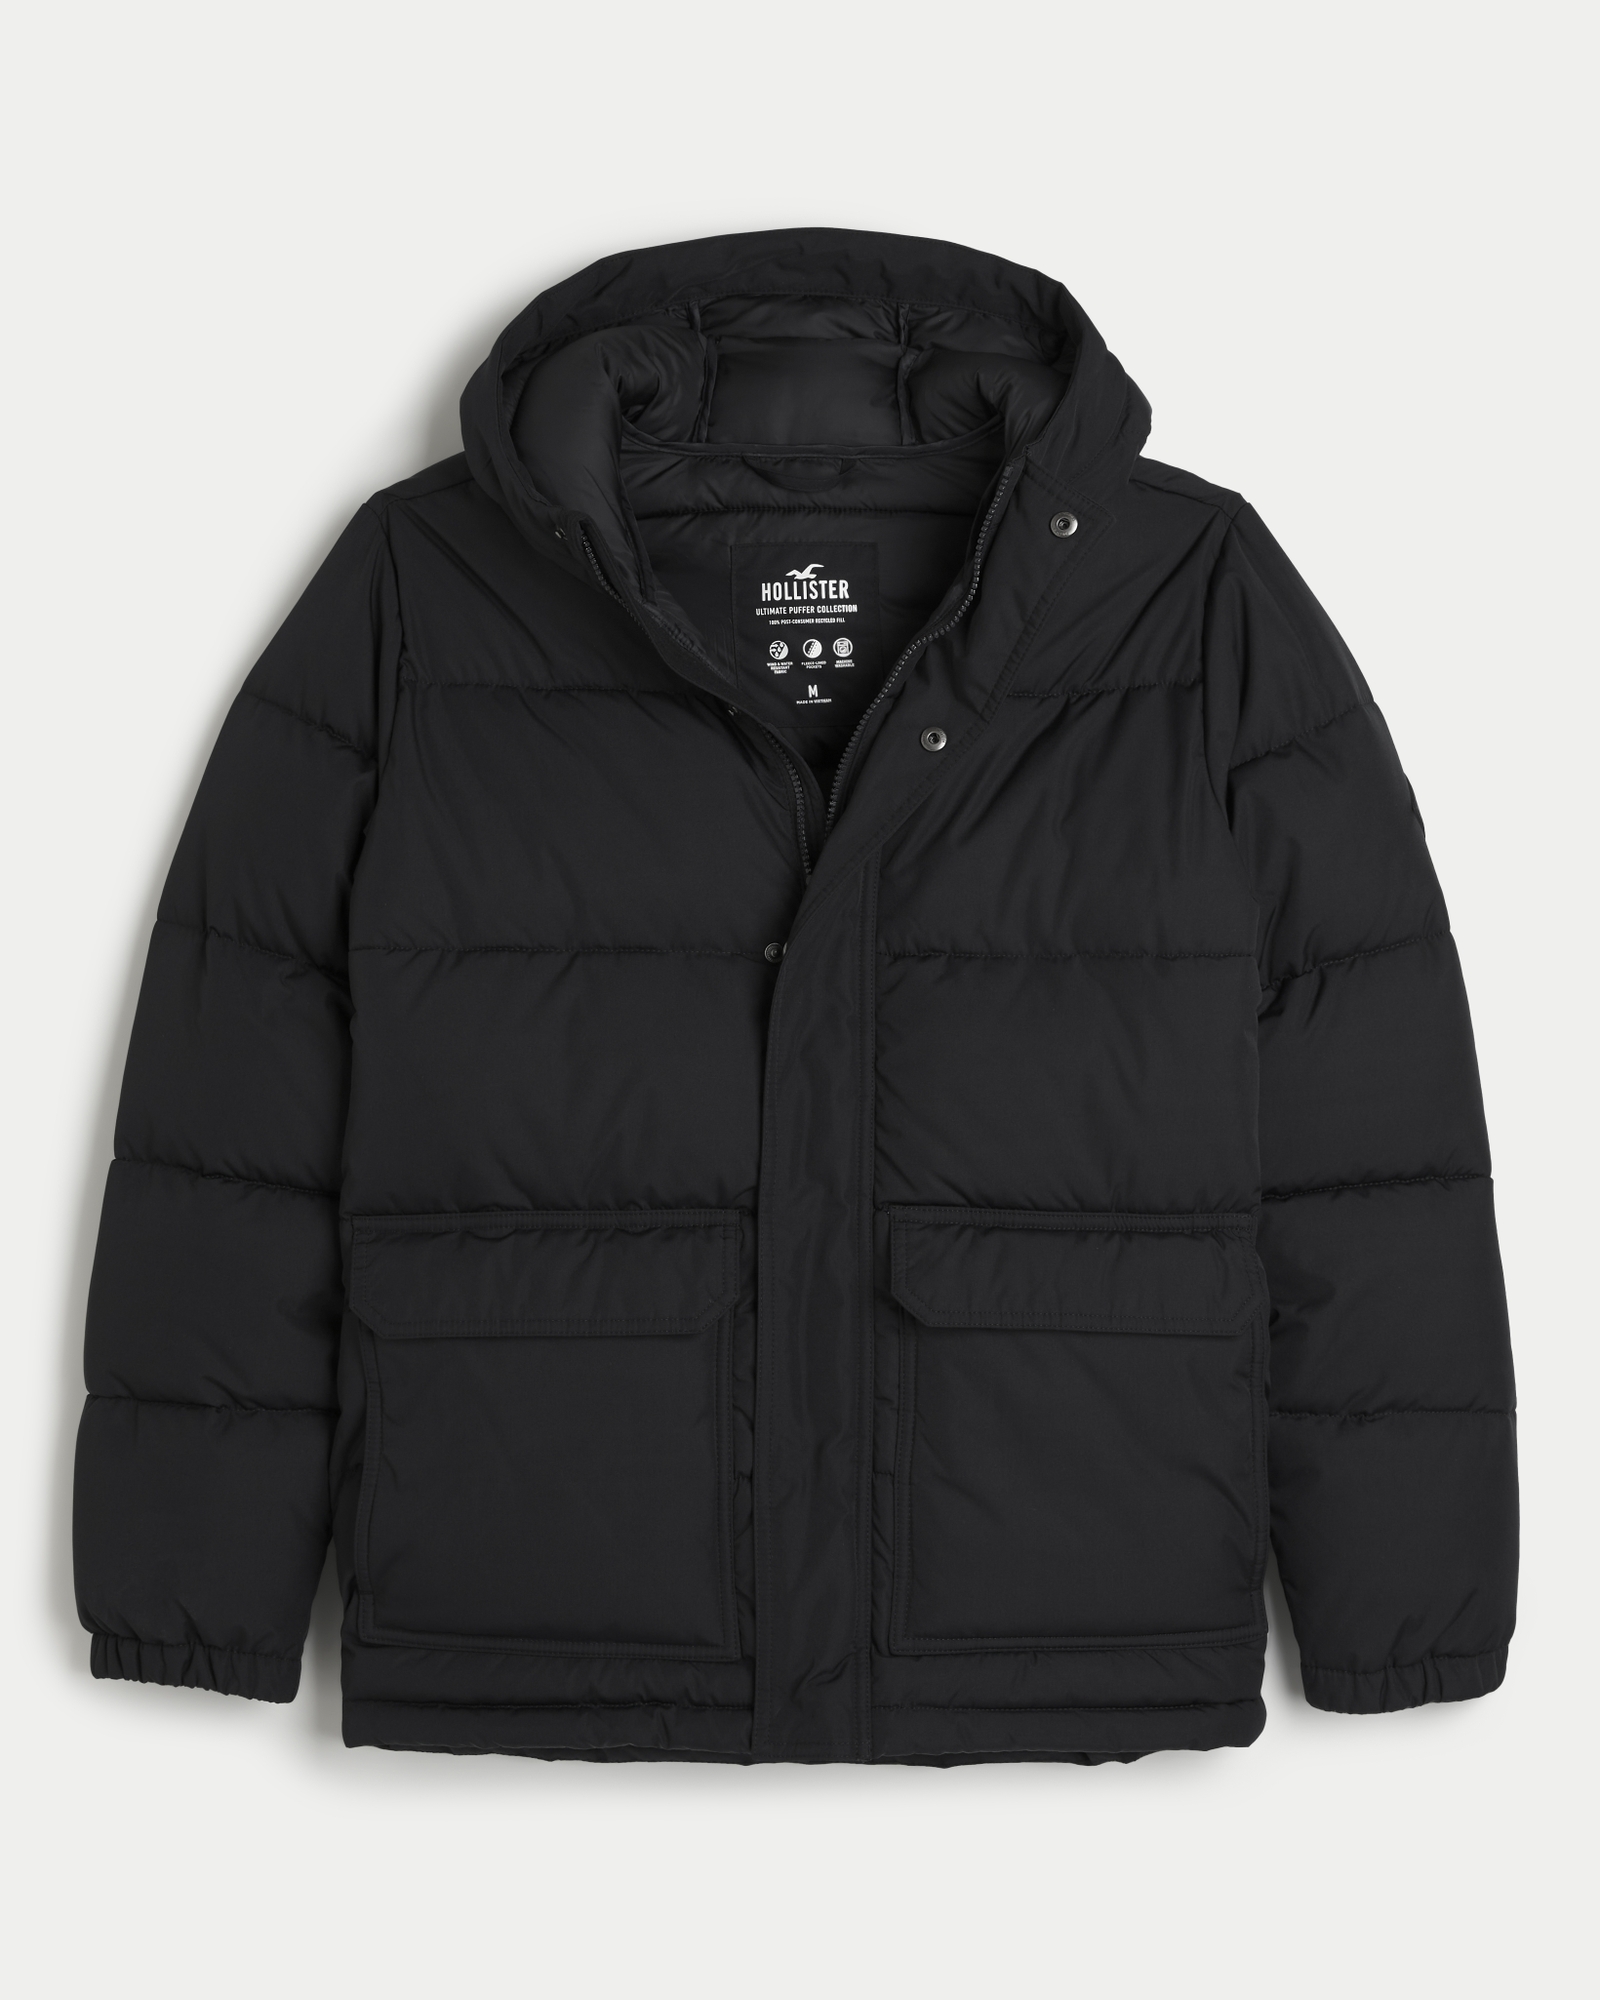 Hollister, Jackets & Coats, Near New Hollister Black Puffer Jacket